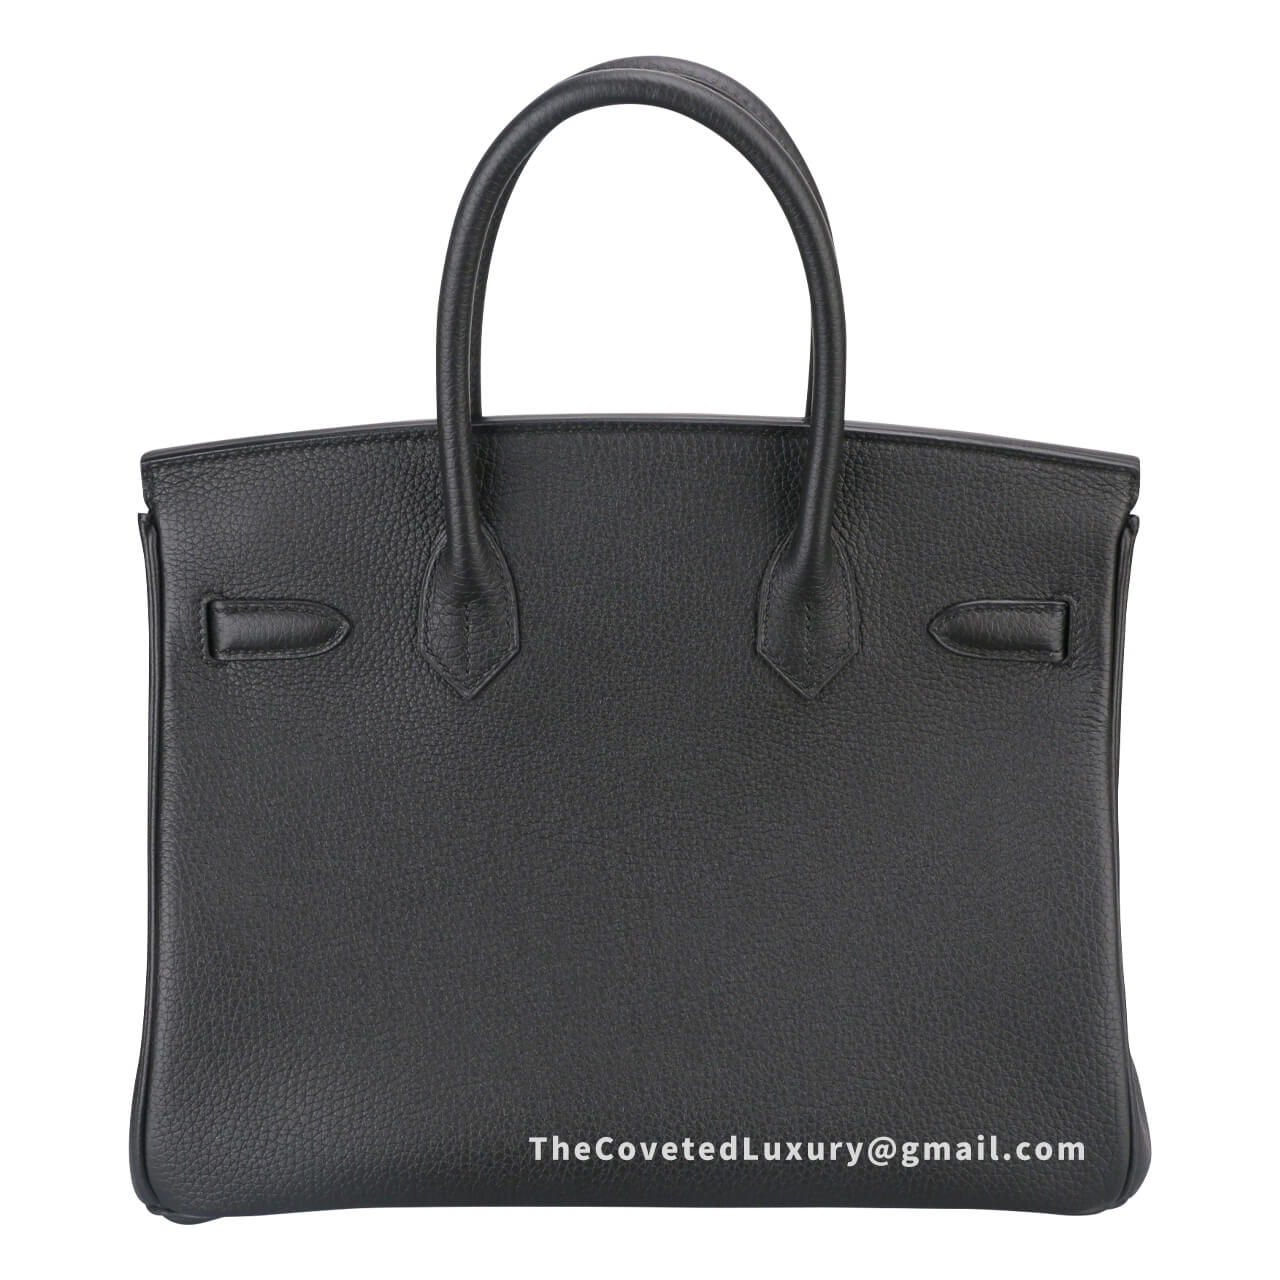 Designer Discreet-Best Replica Handbags Online